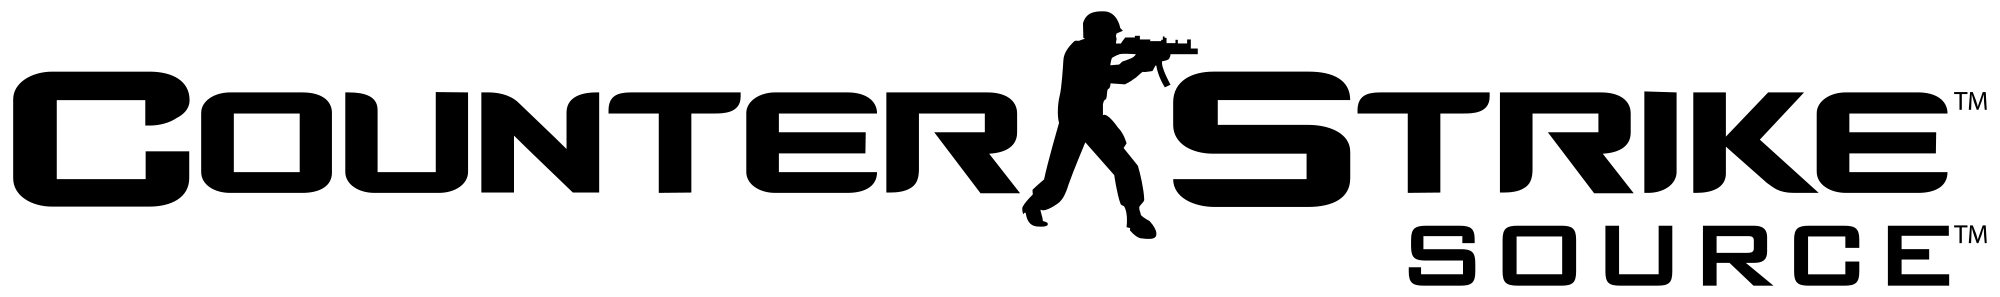 Counter-Strike Logo - Counter Strike Logo PNG File | PNG Mart